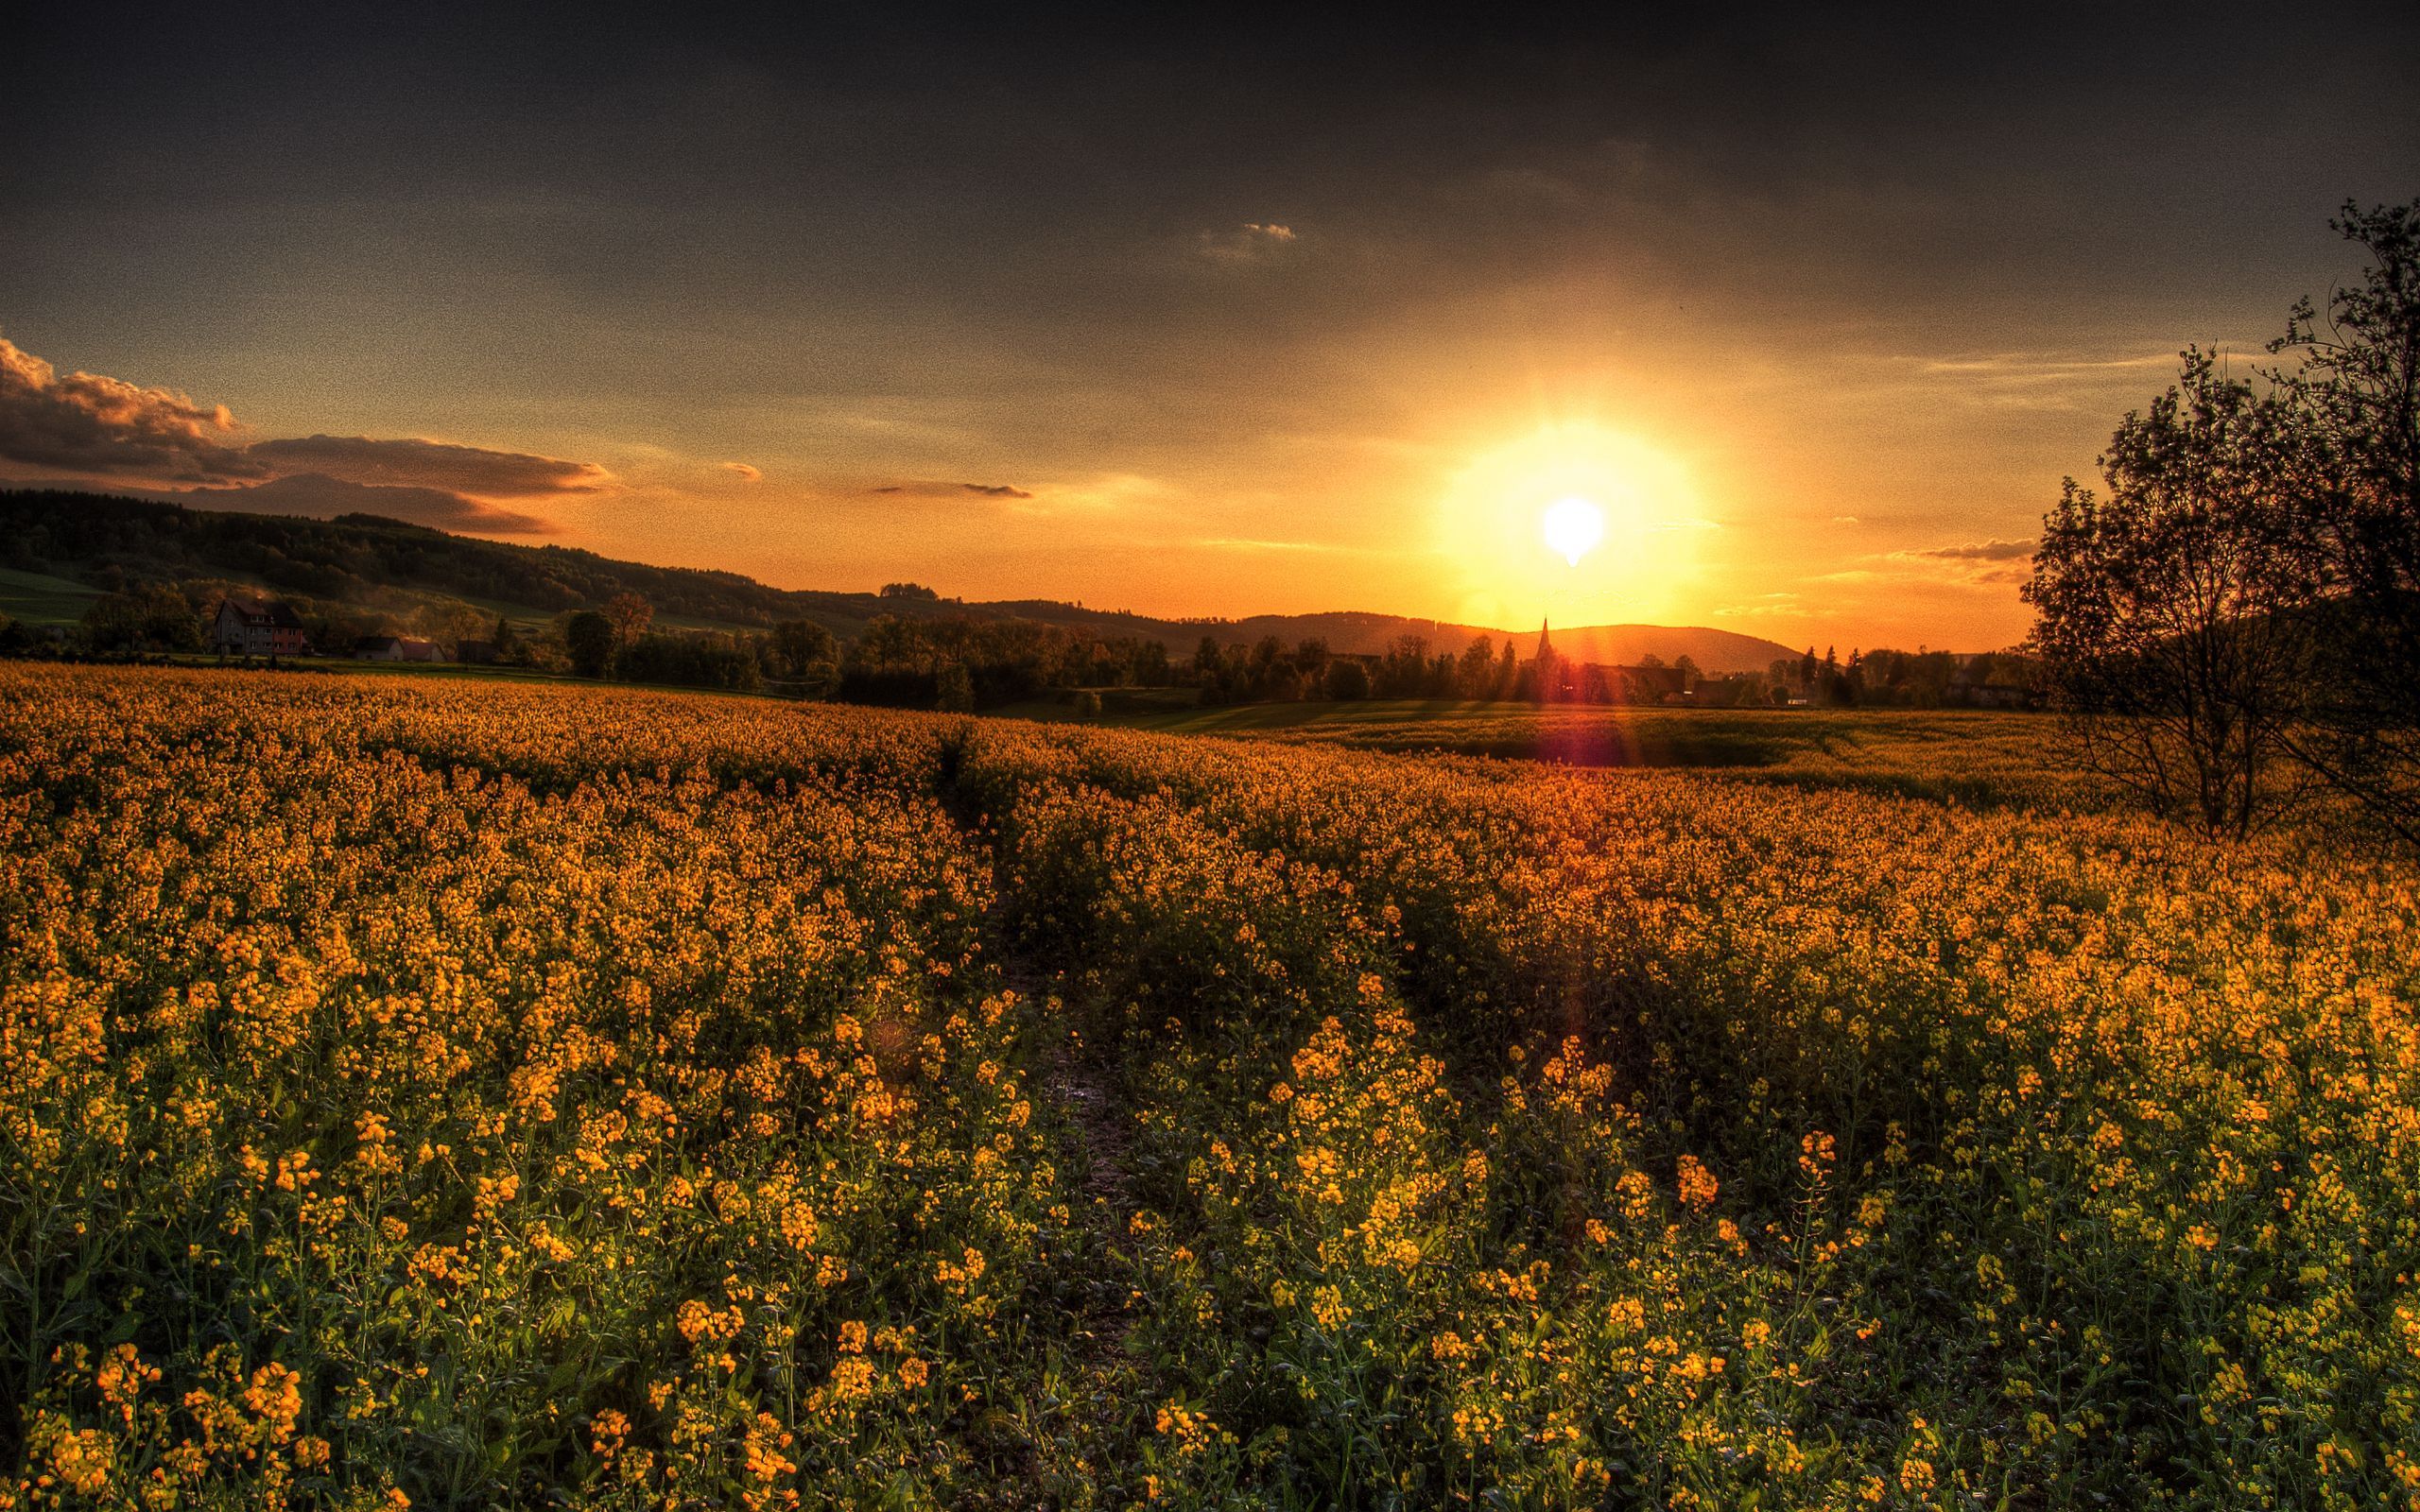 Download wallpaper 2560x1600 sunset, field, landscape widescreen